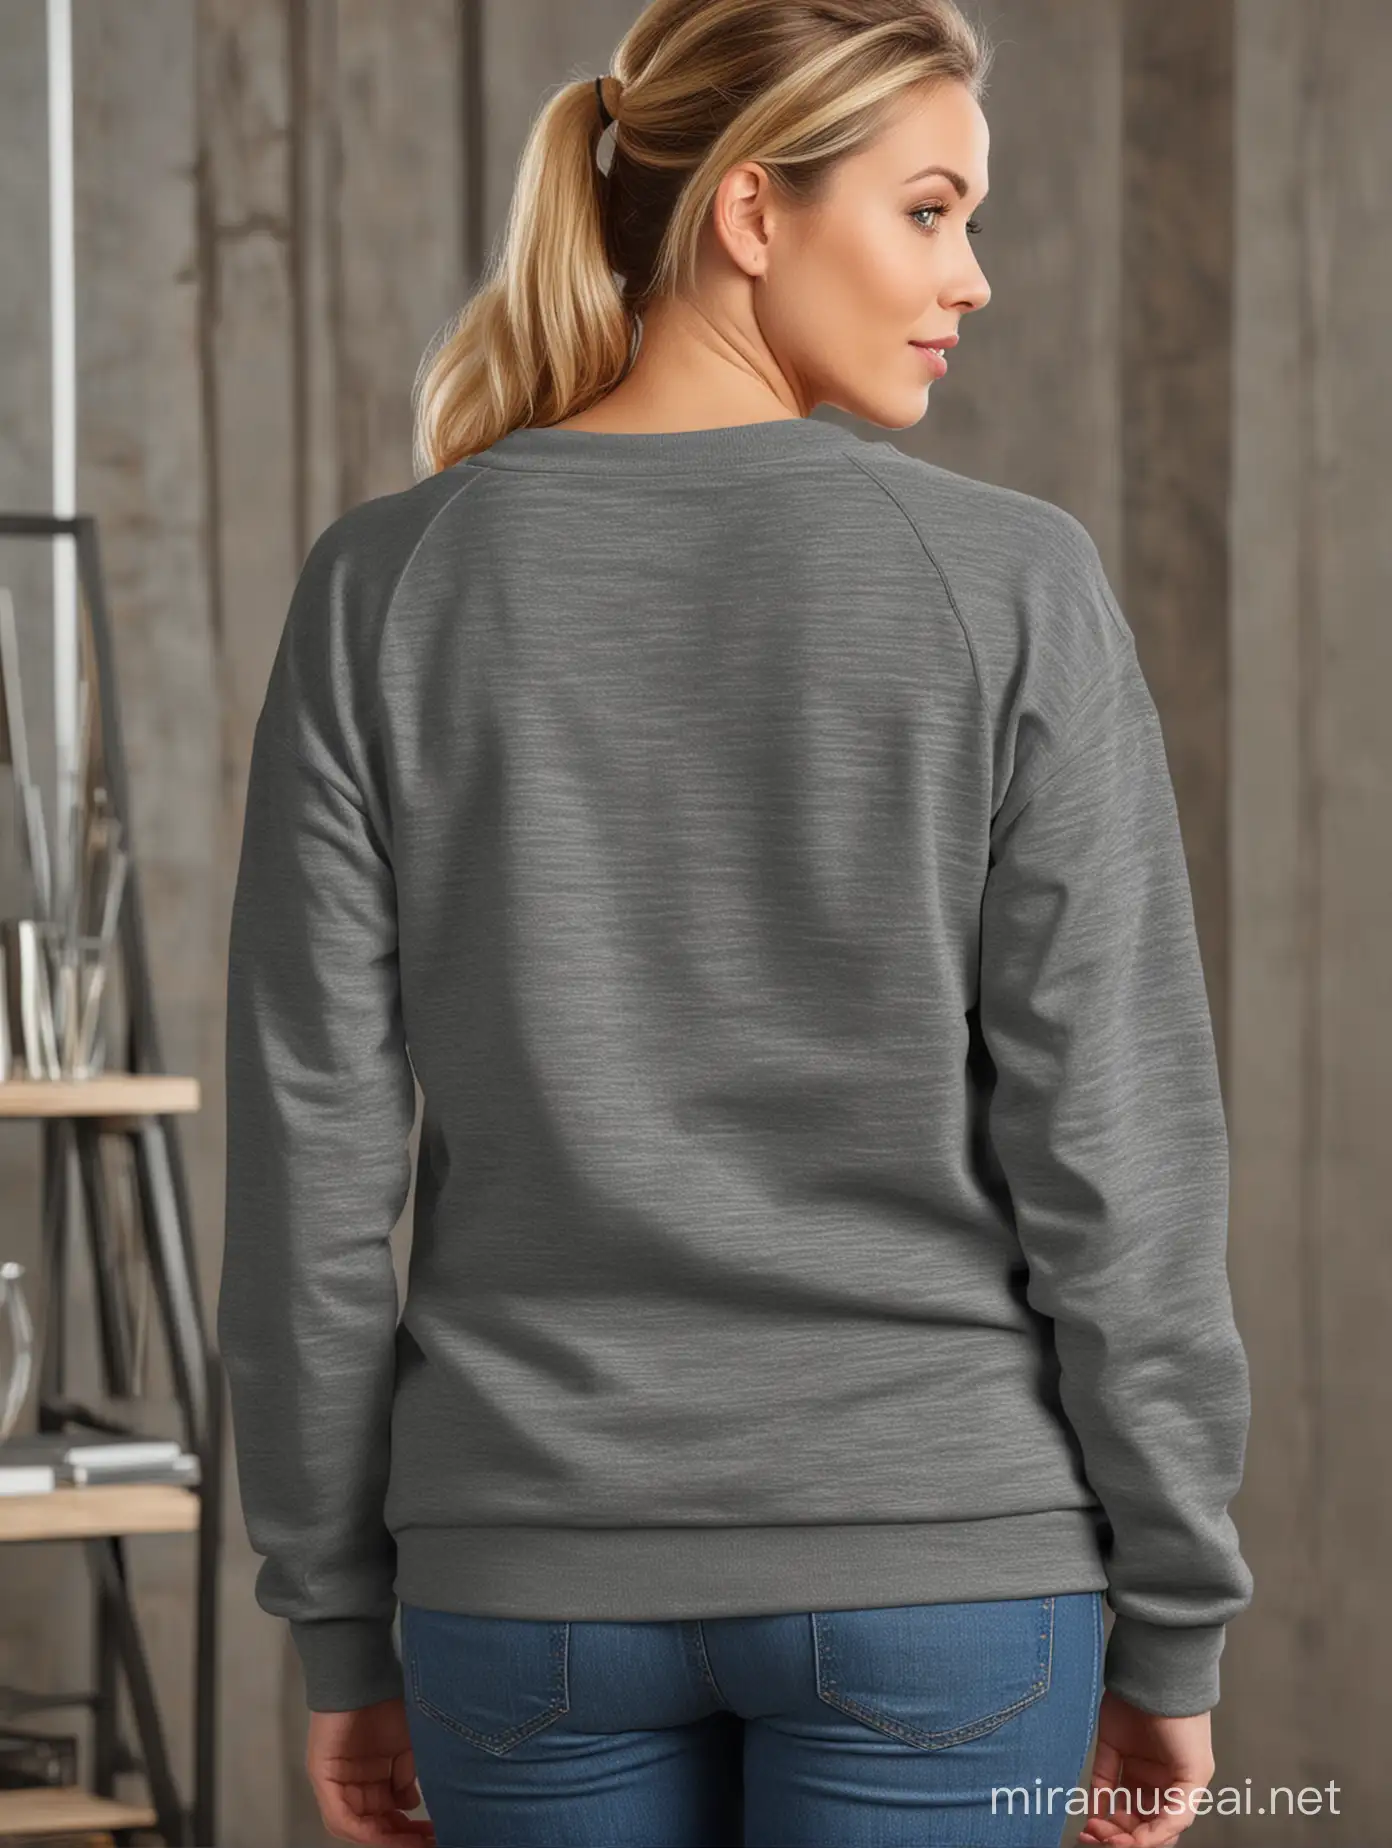 Gildan 18000 Dark Heather sweatshirt back view for a best Aunt model mock up